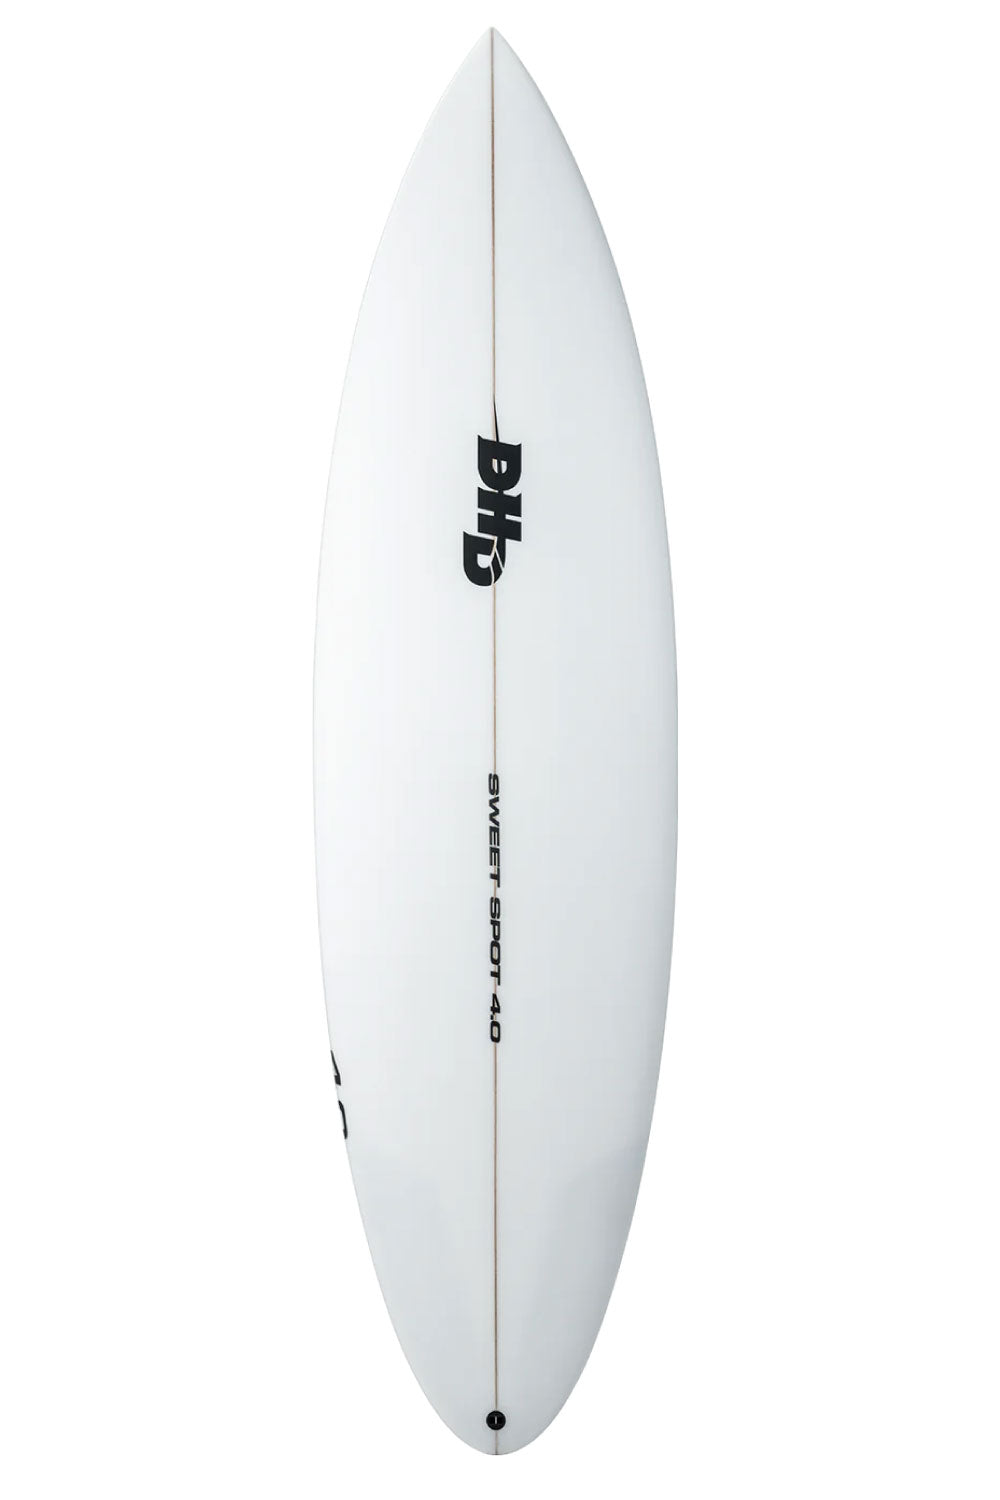 DHD Sweet Spot 4.0 Surfboard